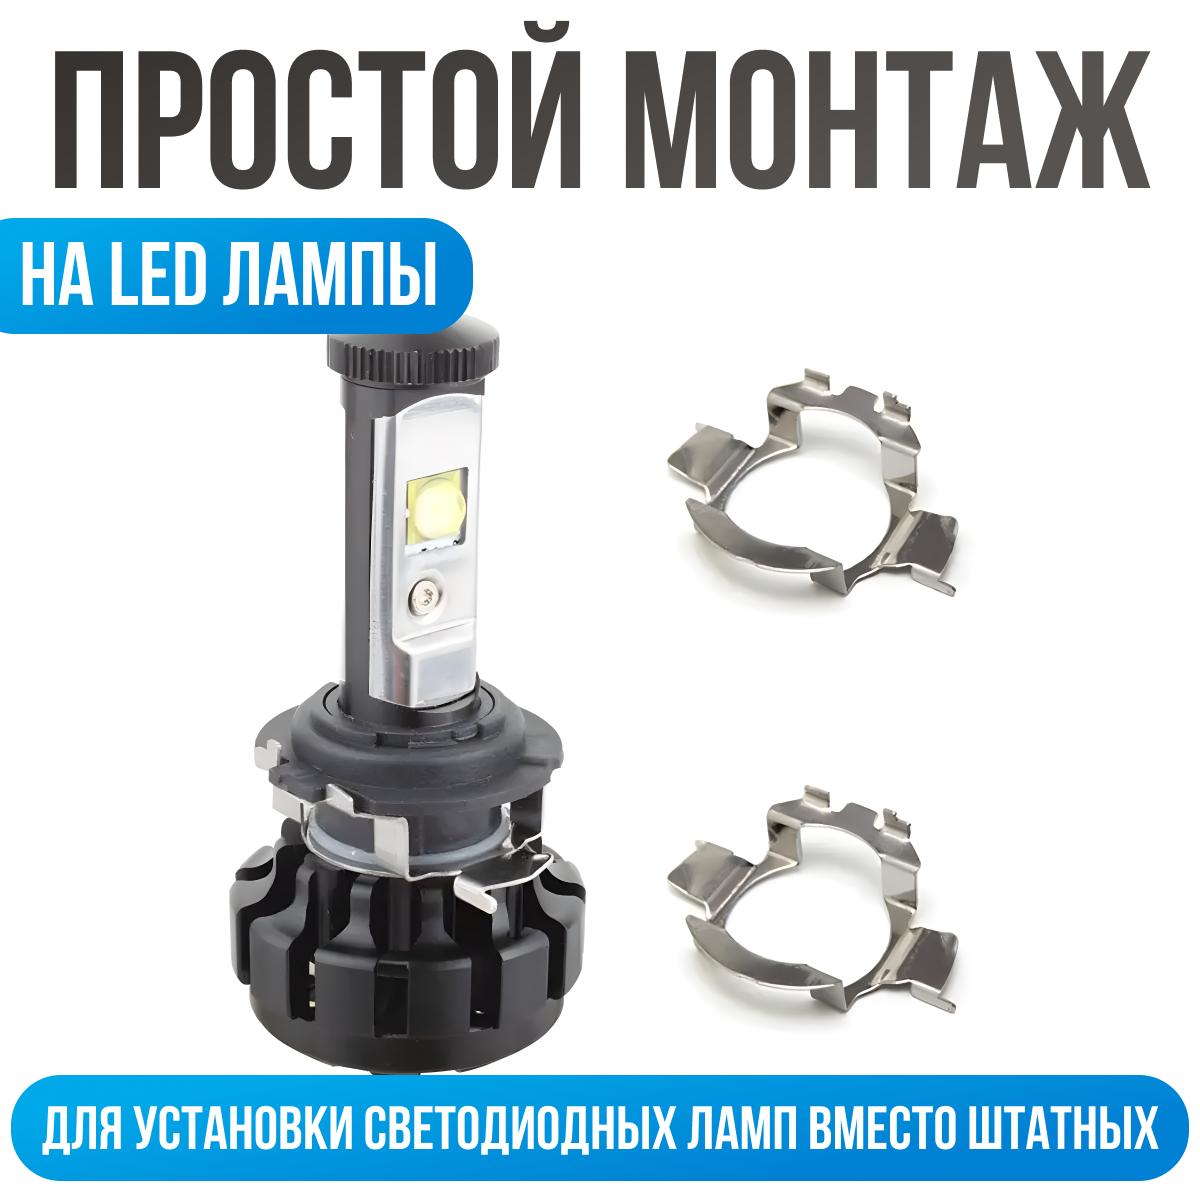 Переходник h7 для установки светодиодных ламп в Nissan, Opel, Volkwagen, BMW, 2 шт